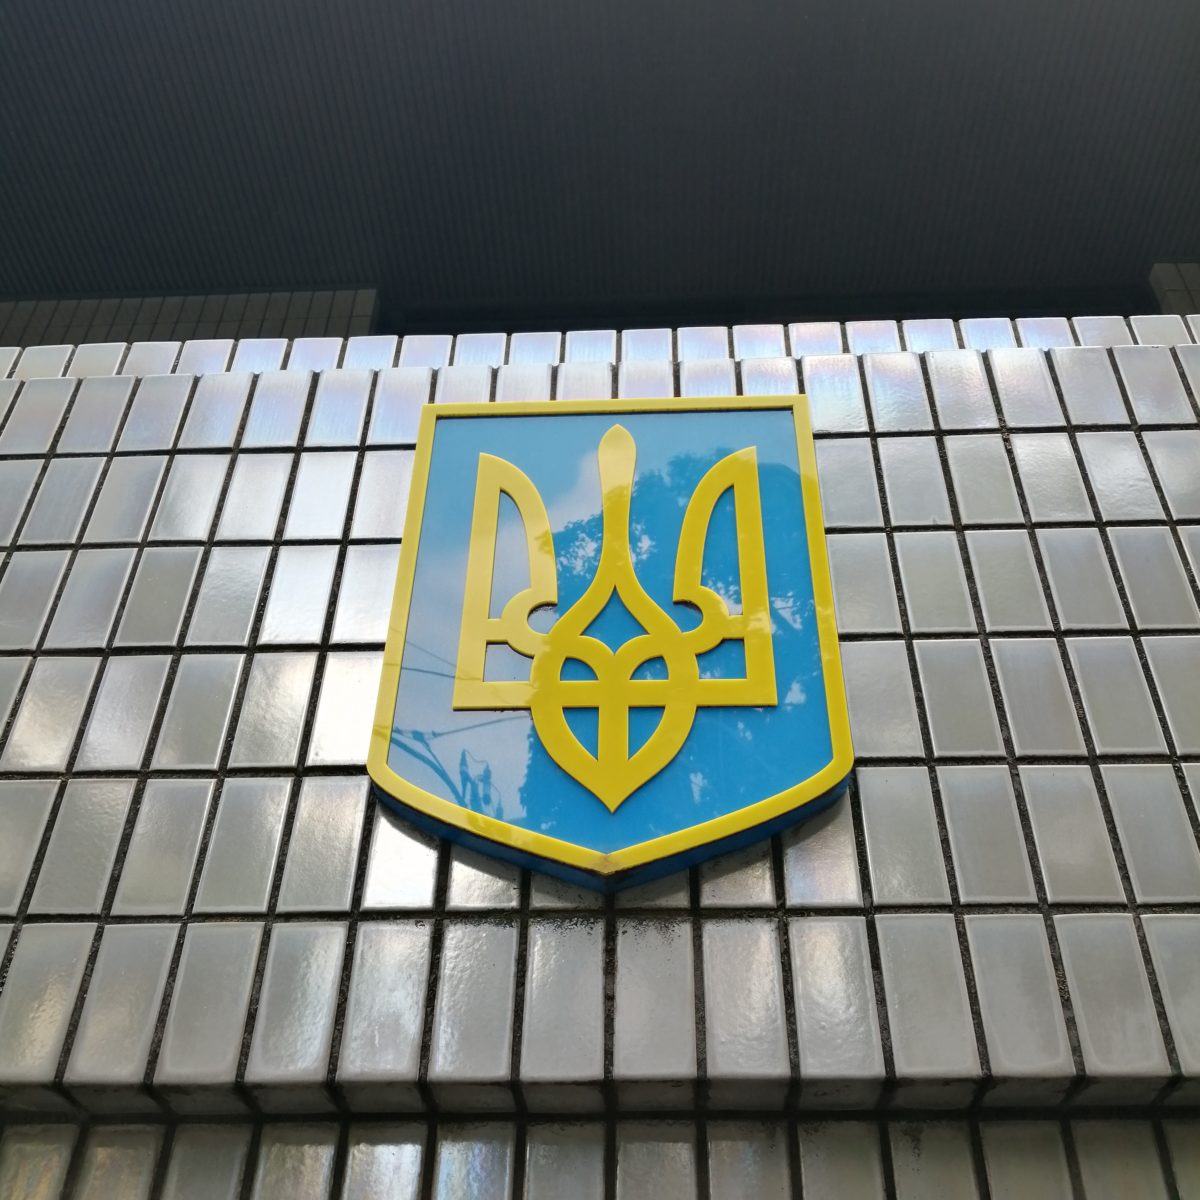 ウクライナ大使館へ 今年2月の文化外交月間に協力